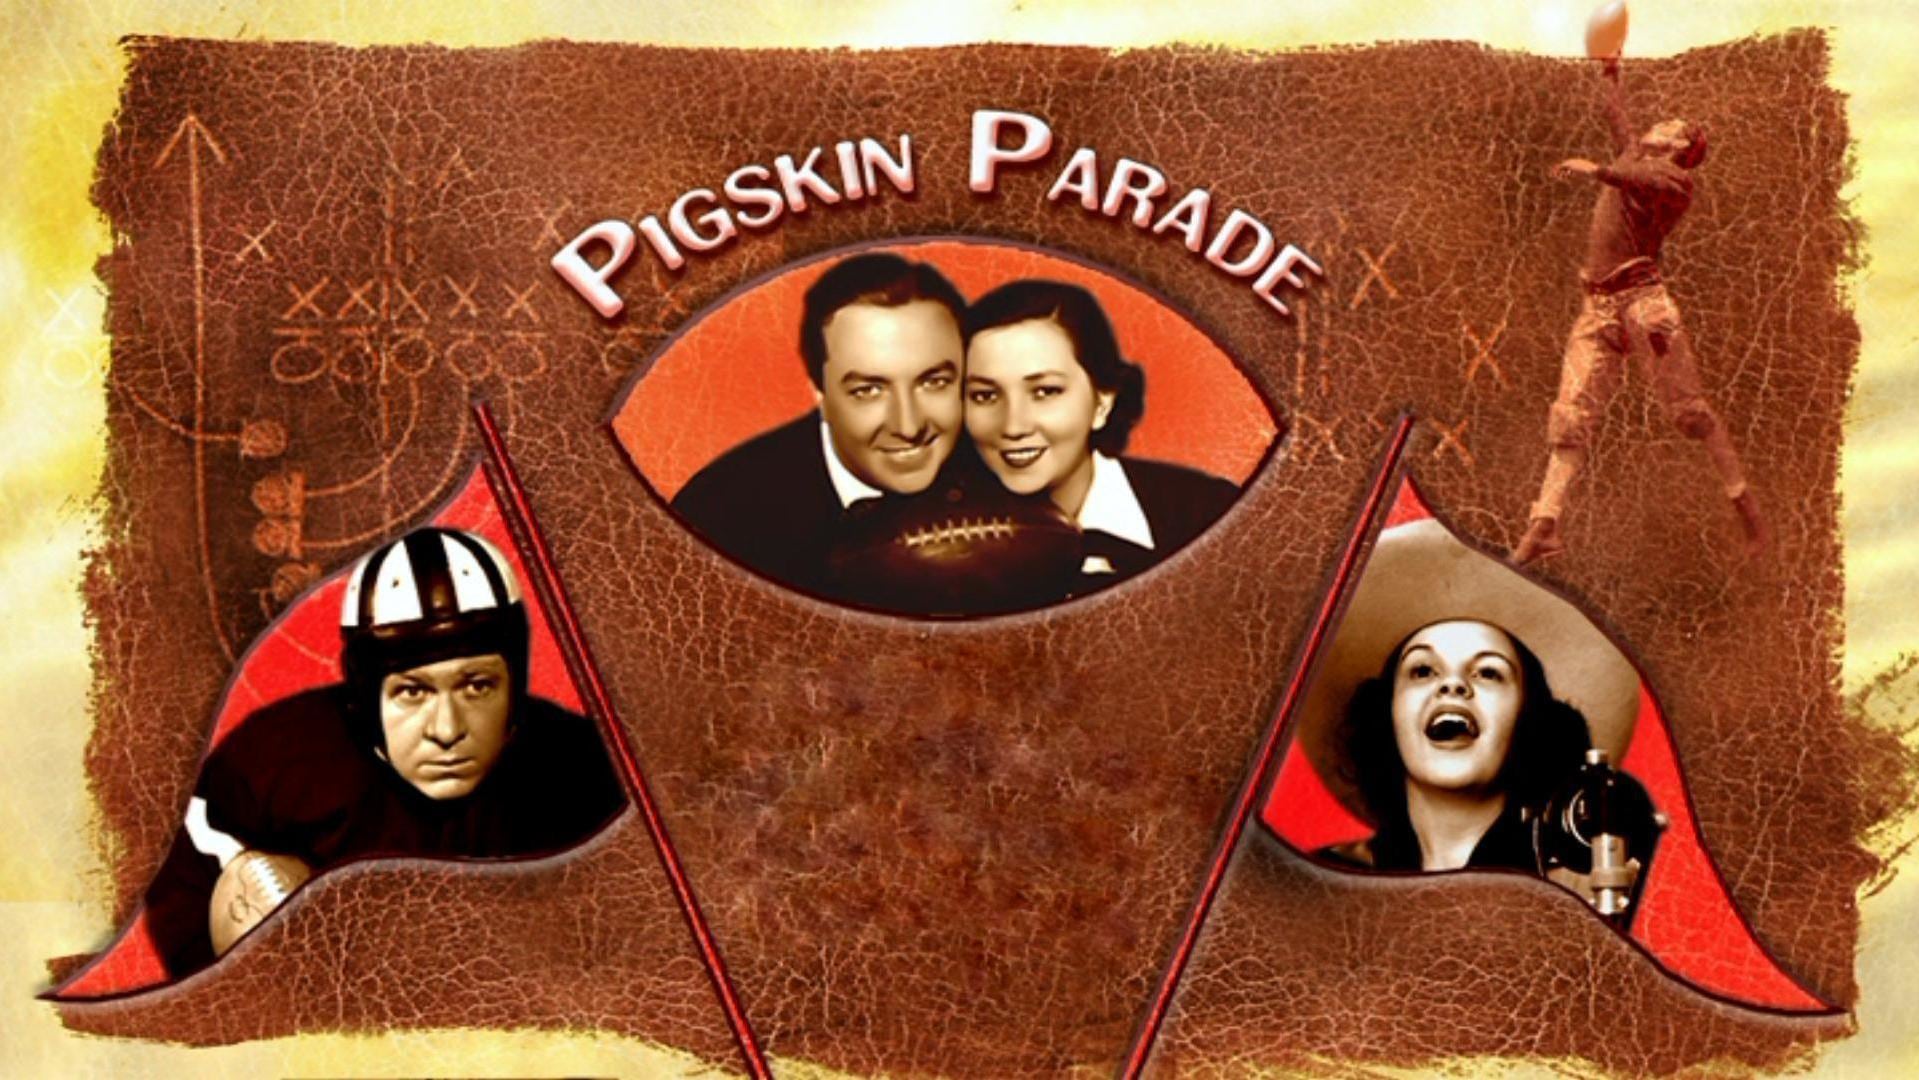 Pigskin Parade